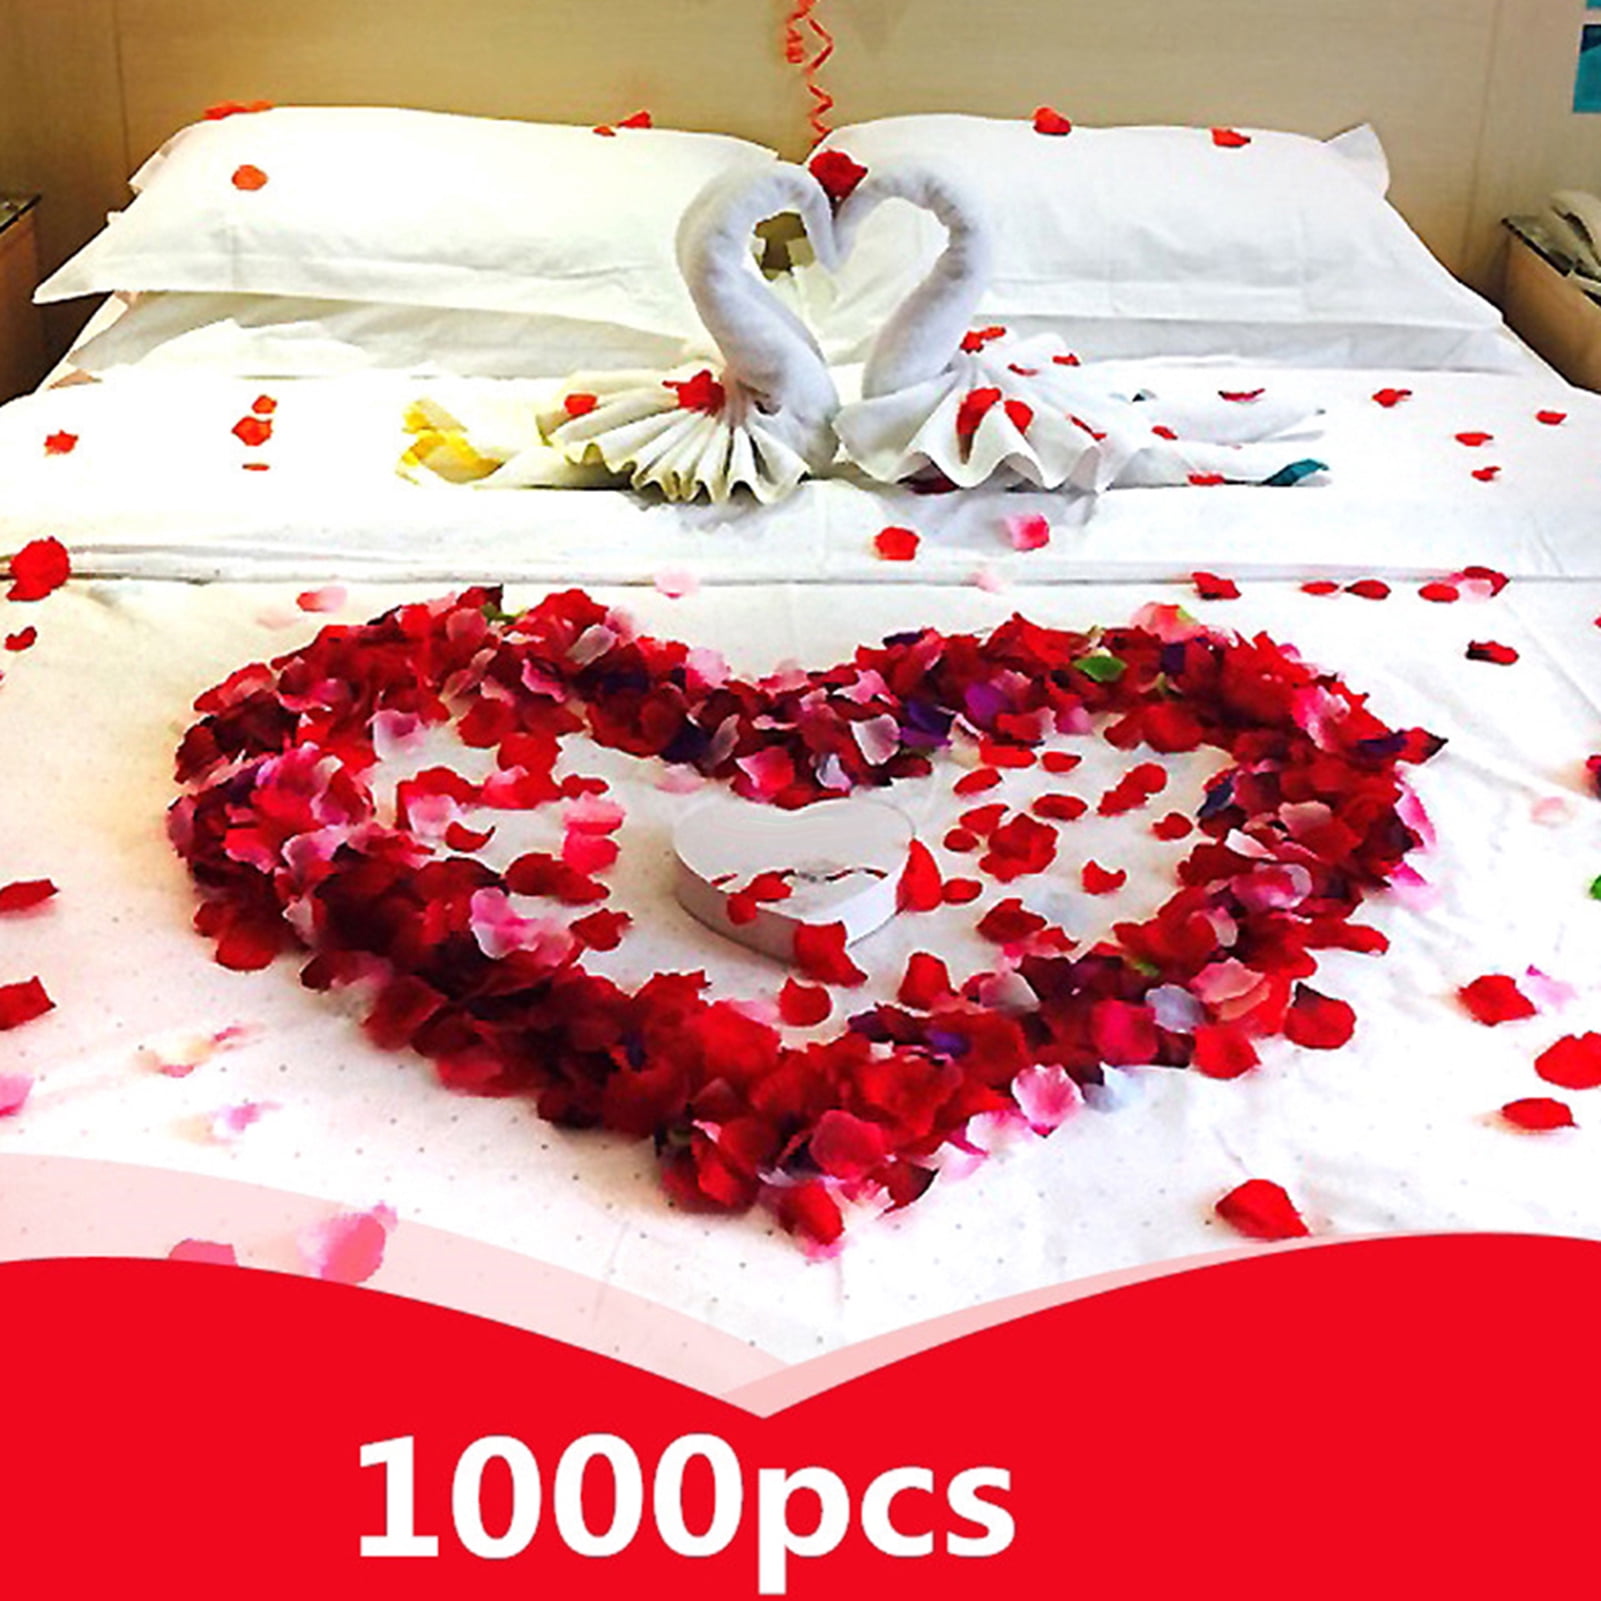 1000pcs Flower Rose Petals Wedding Party Table Decoration Floral Confetti Decor 